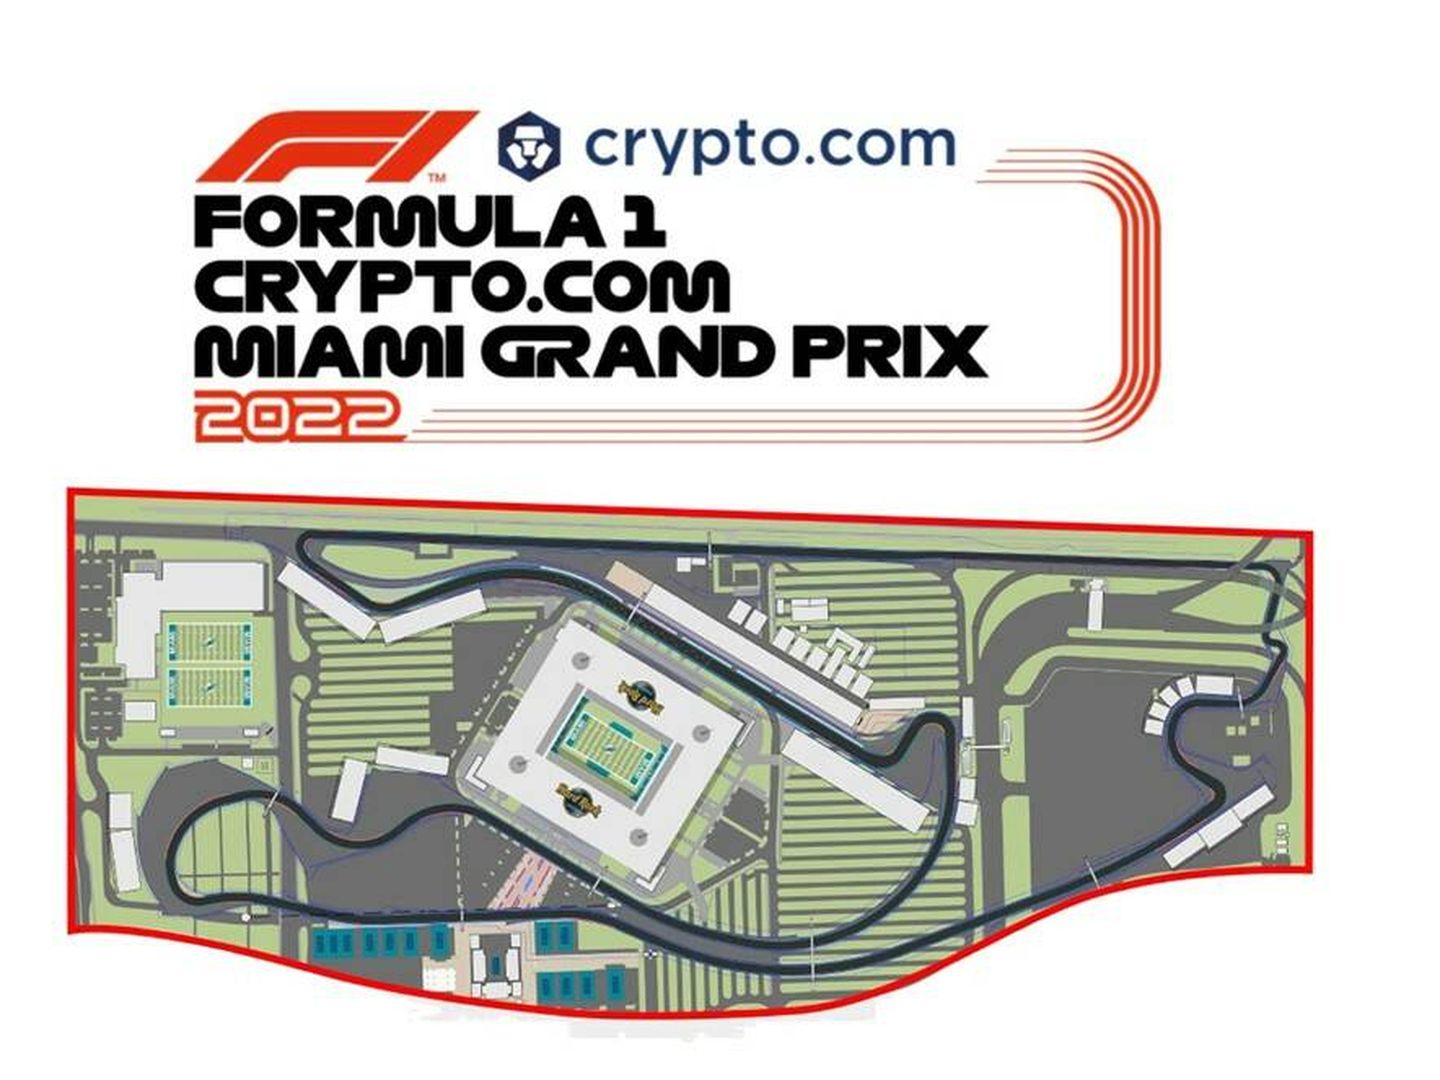 Crypto.com será el nuevo patrocinador oficial del Gran Premio de Miami, que se disputará en un nuevo trazado urbano alrededor del Hard Rock stadium